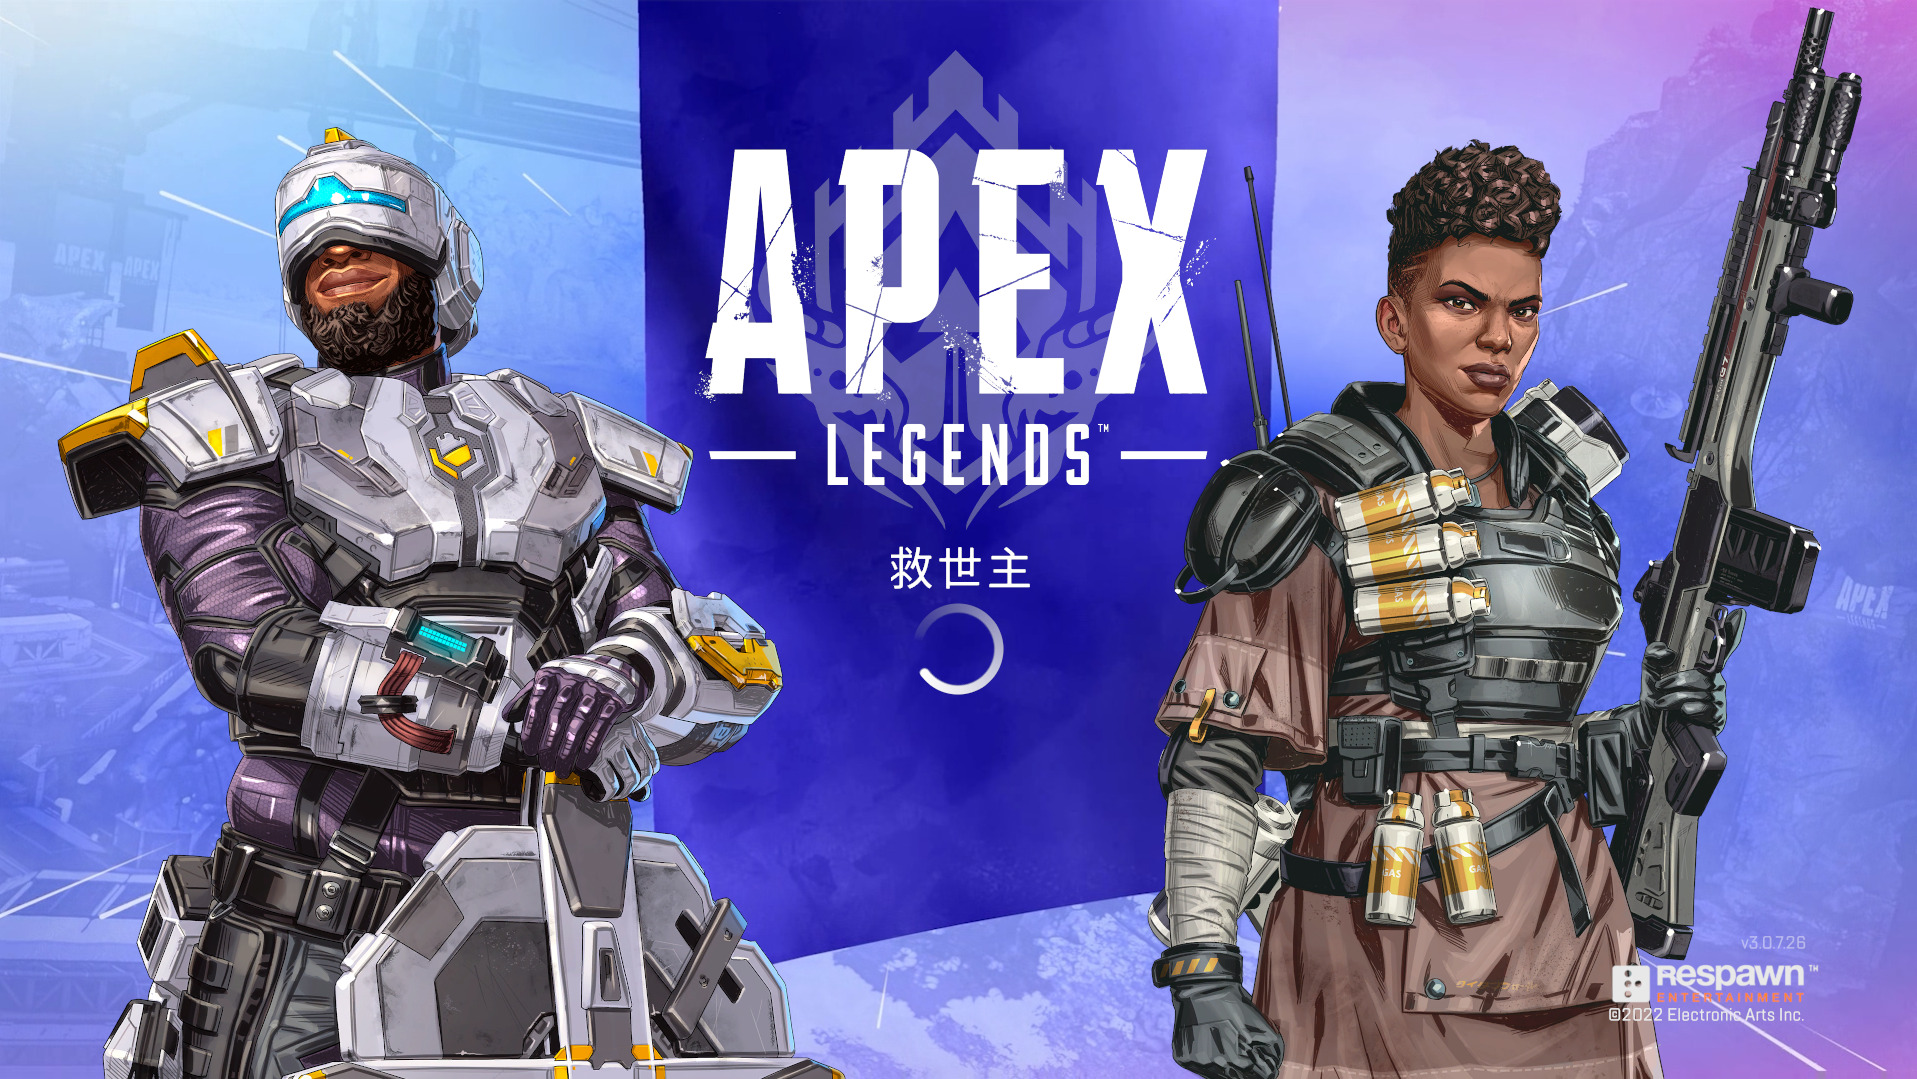 【Apex Legends】シーズン13 はいつまで？ランクの期間とマップについて【エーペックスレジェンズ】